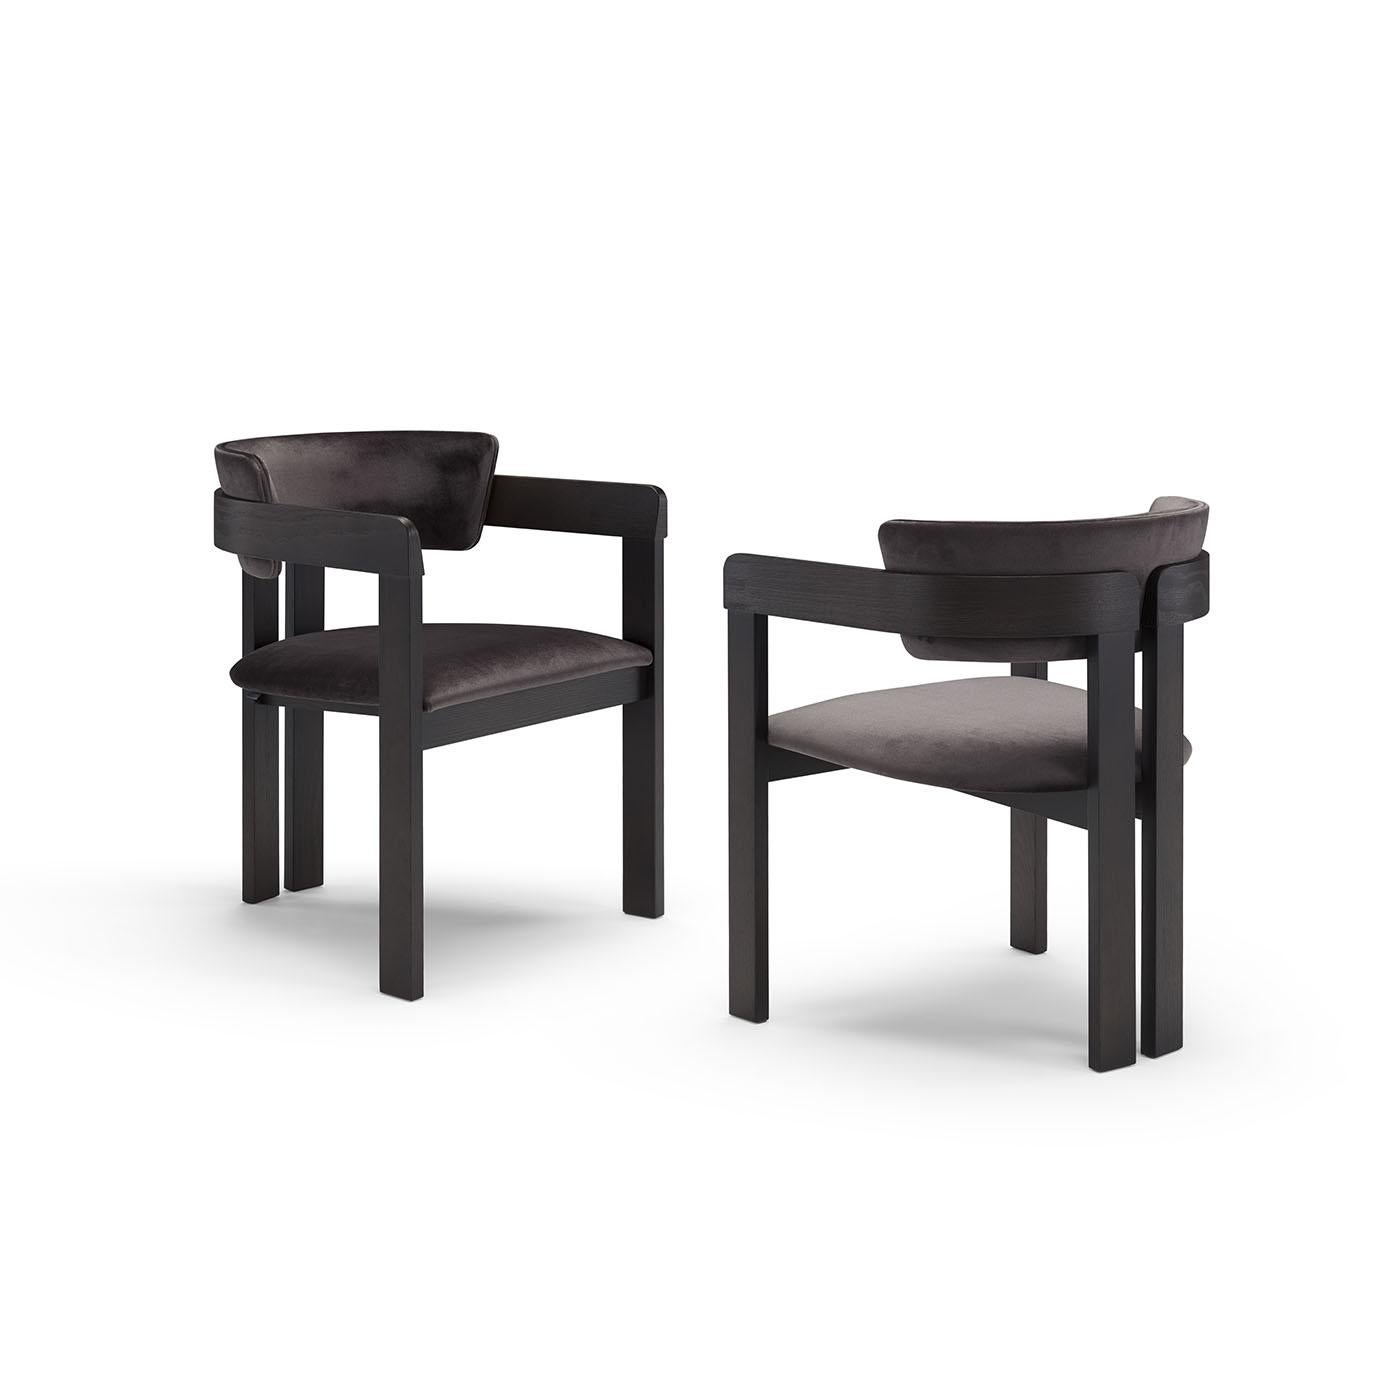 Dieser Stuhl aus der Serie Ines wurde von Studio Tecnico für Pacini & Cappellini entworfen und ist eine hervorragende Ergänzung für moderne oder industriell inspirierte Einrichtungen. Von Kopf bis Fuß in Schwarz gehalten, kontrastieren die anmutigen